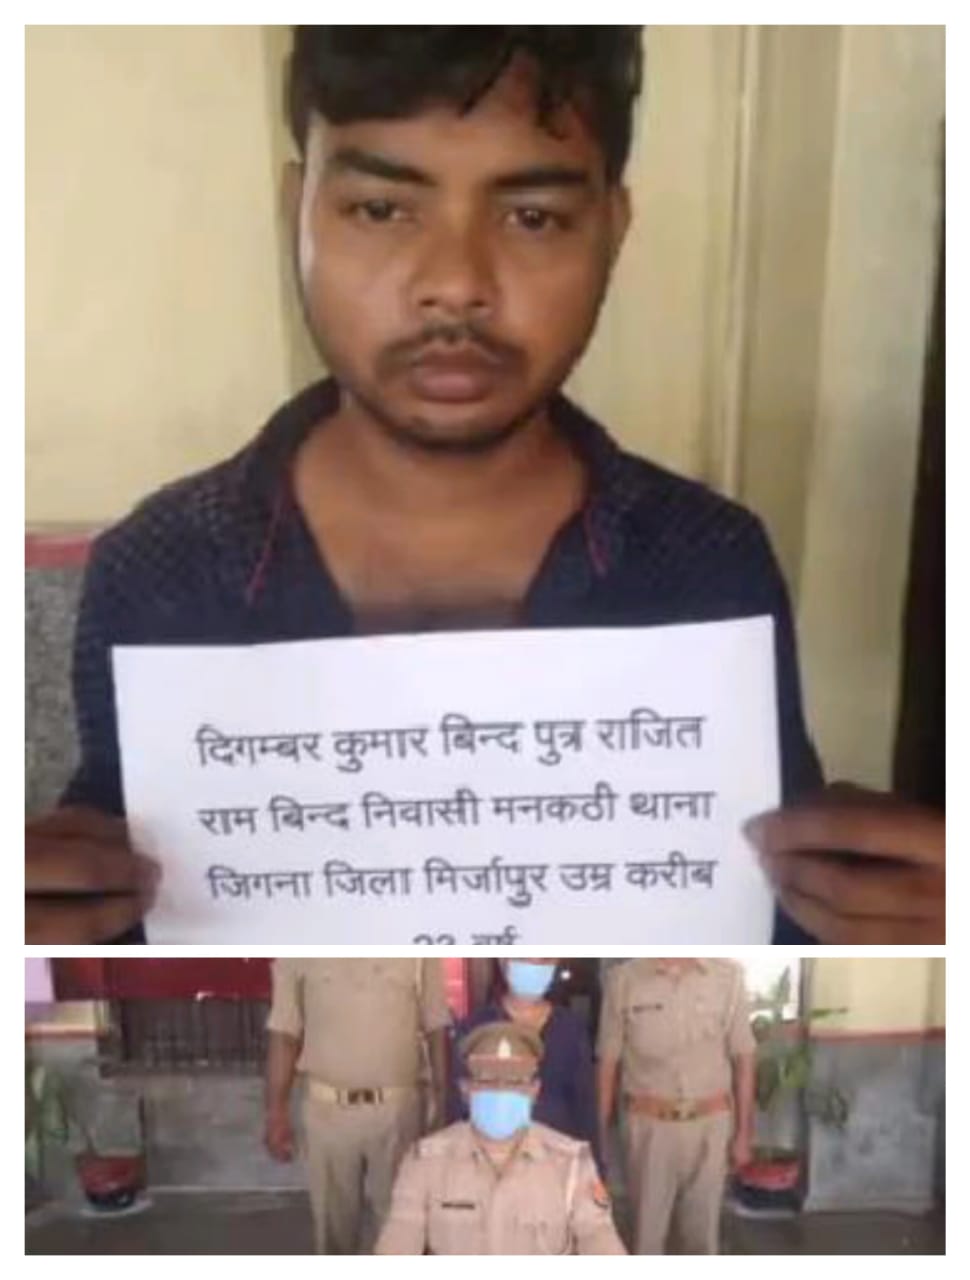 विंध्याचल स्टेशन के प्लेटफार्म से जी आर पी ने एक संदिग्ध युवक को किया गिरफतार।